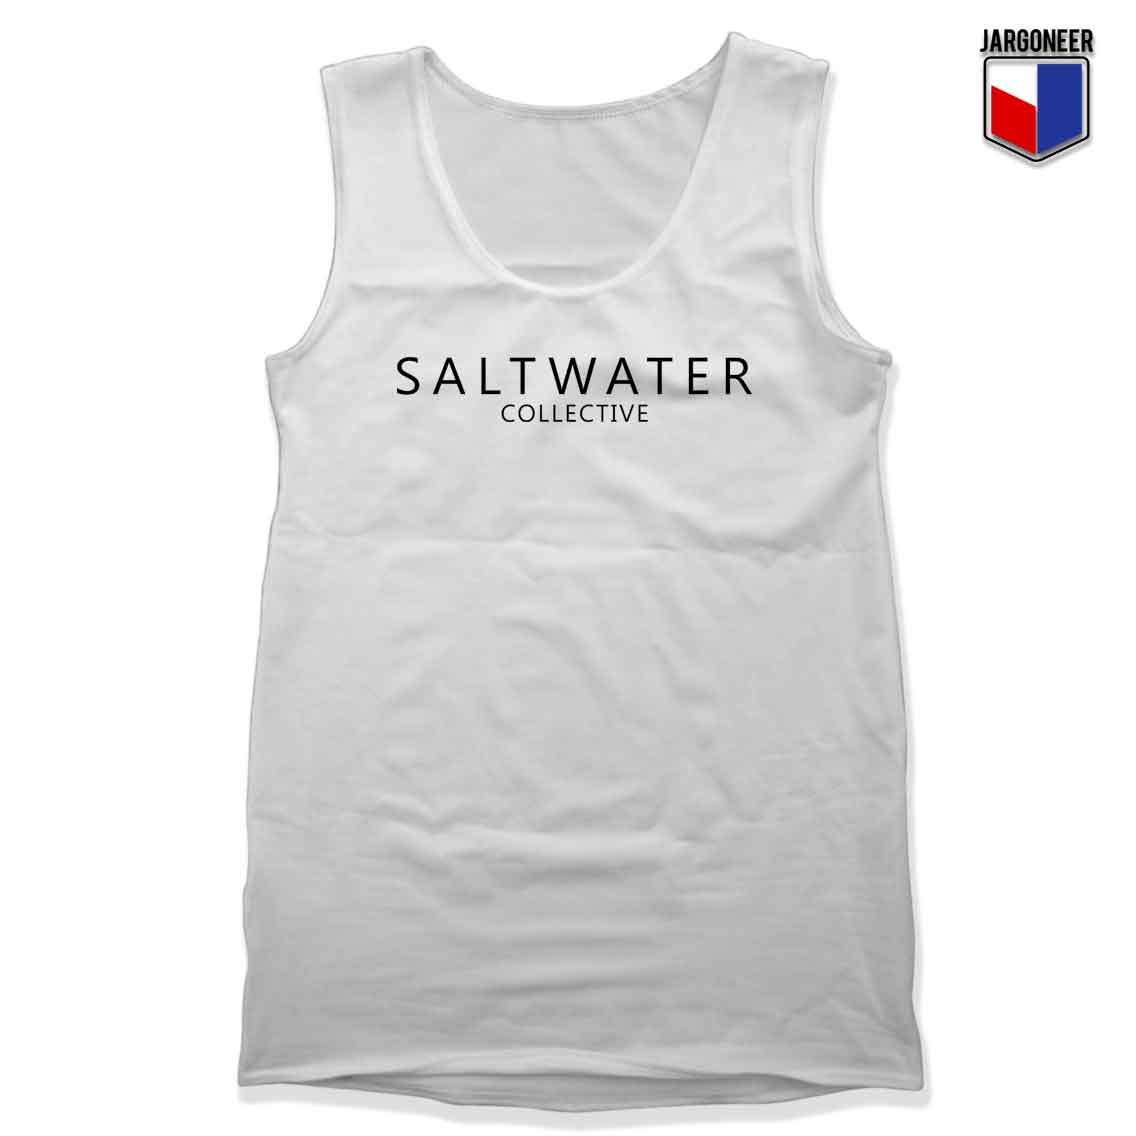 Saltwater Collective - Shop Unique Graphic Cool Shirt Designs